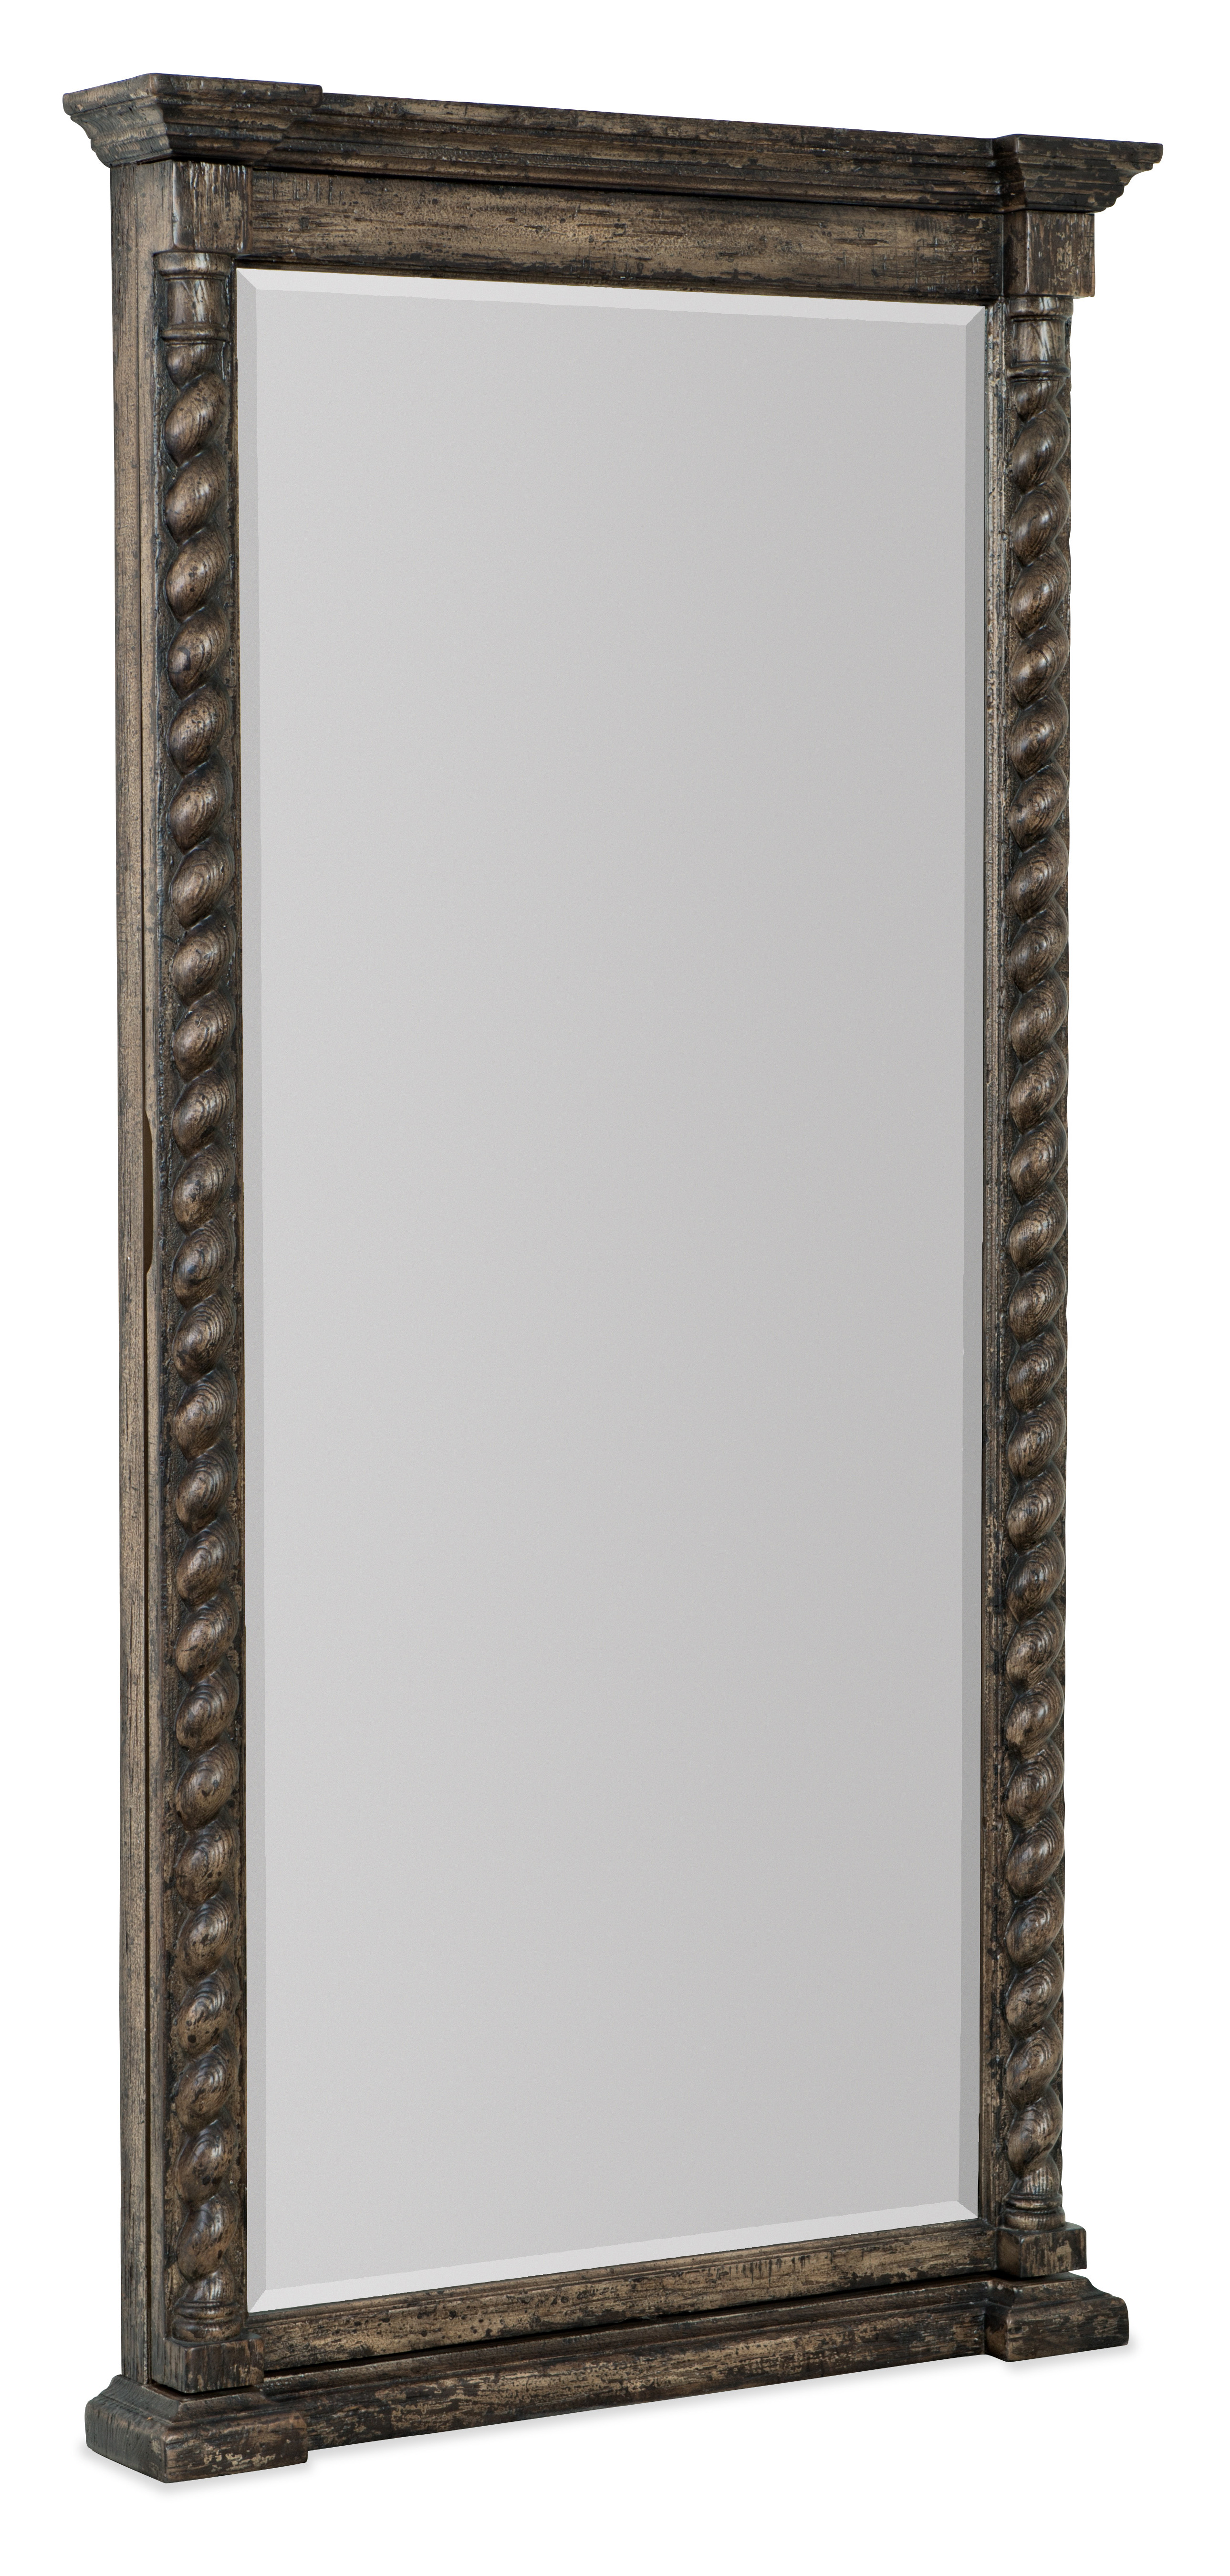 Picture of Vail Floor Mirror w/ Storage